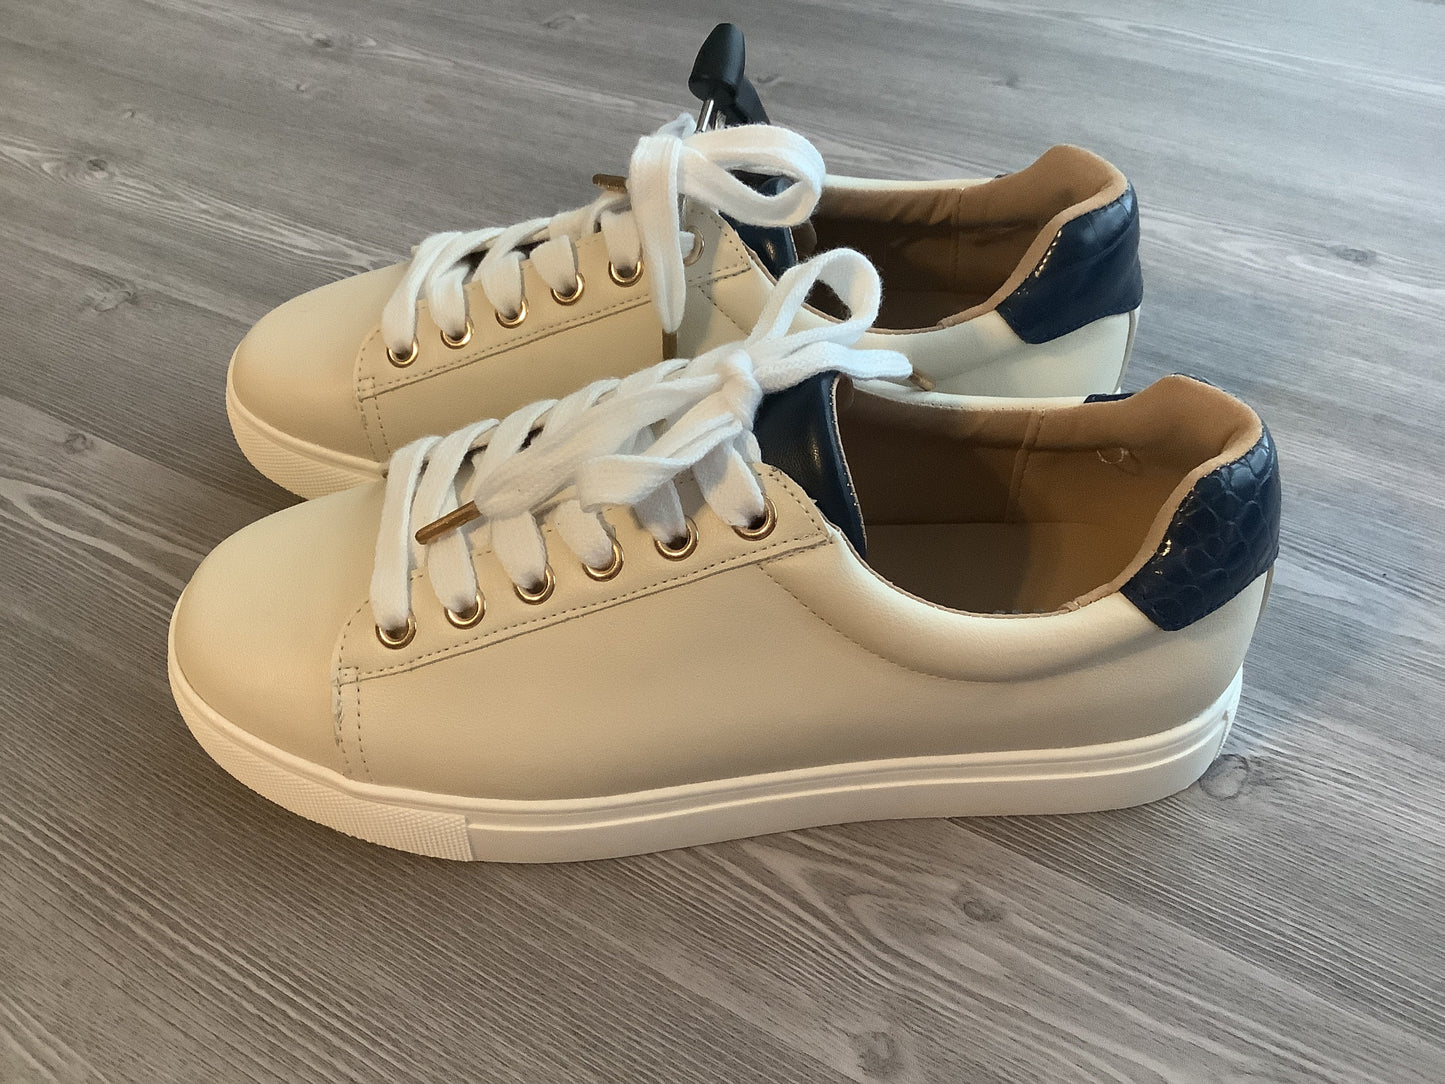 White Shoes Sneakers Mia, Size 8